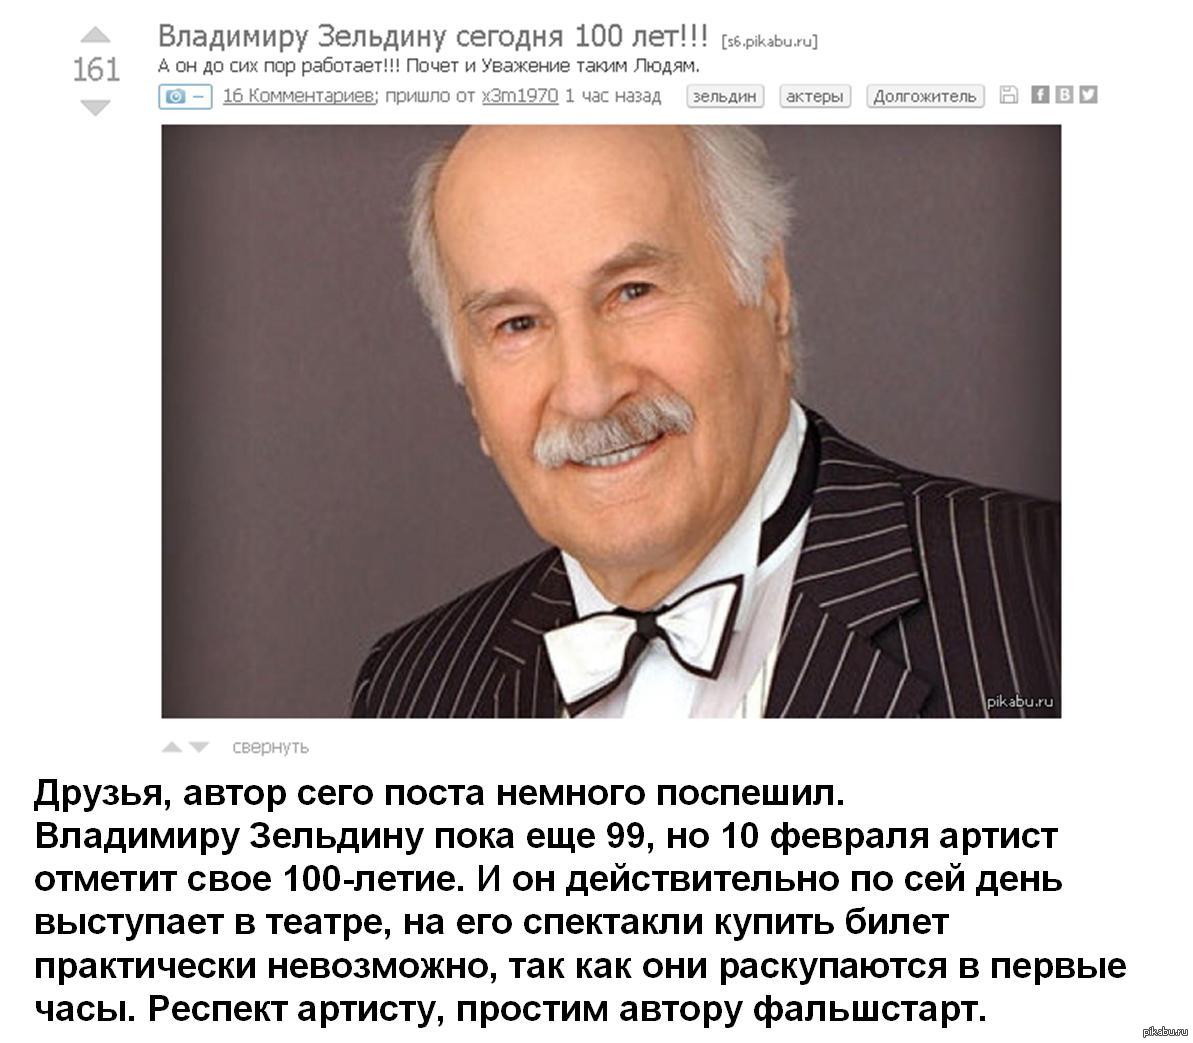 Владимир Зельдин фото в 100 лет